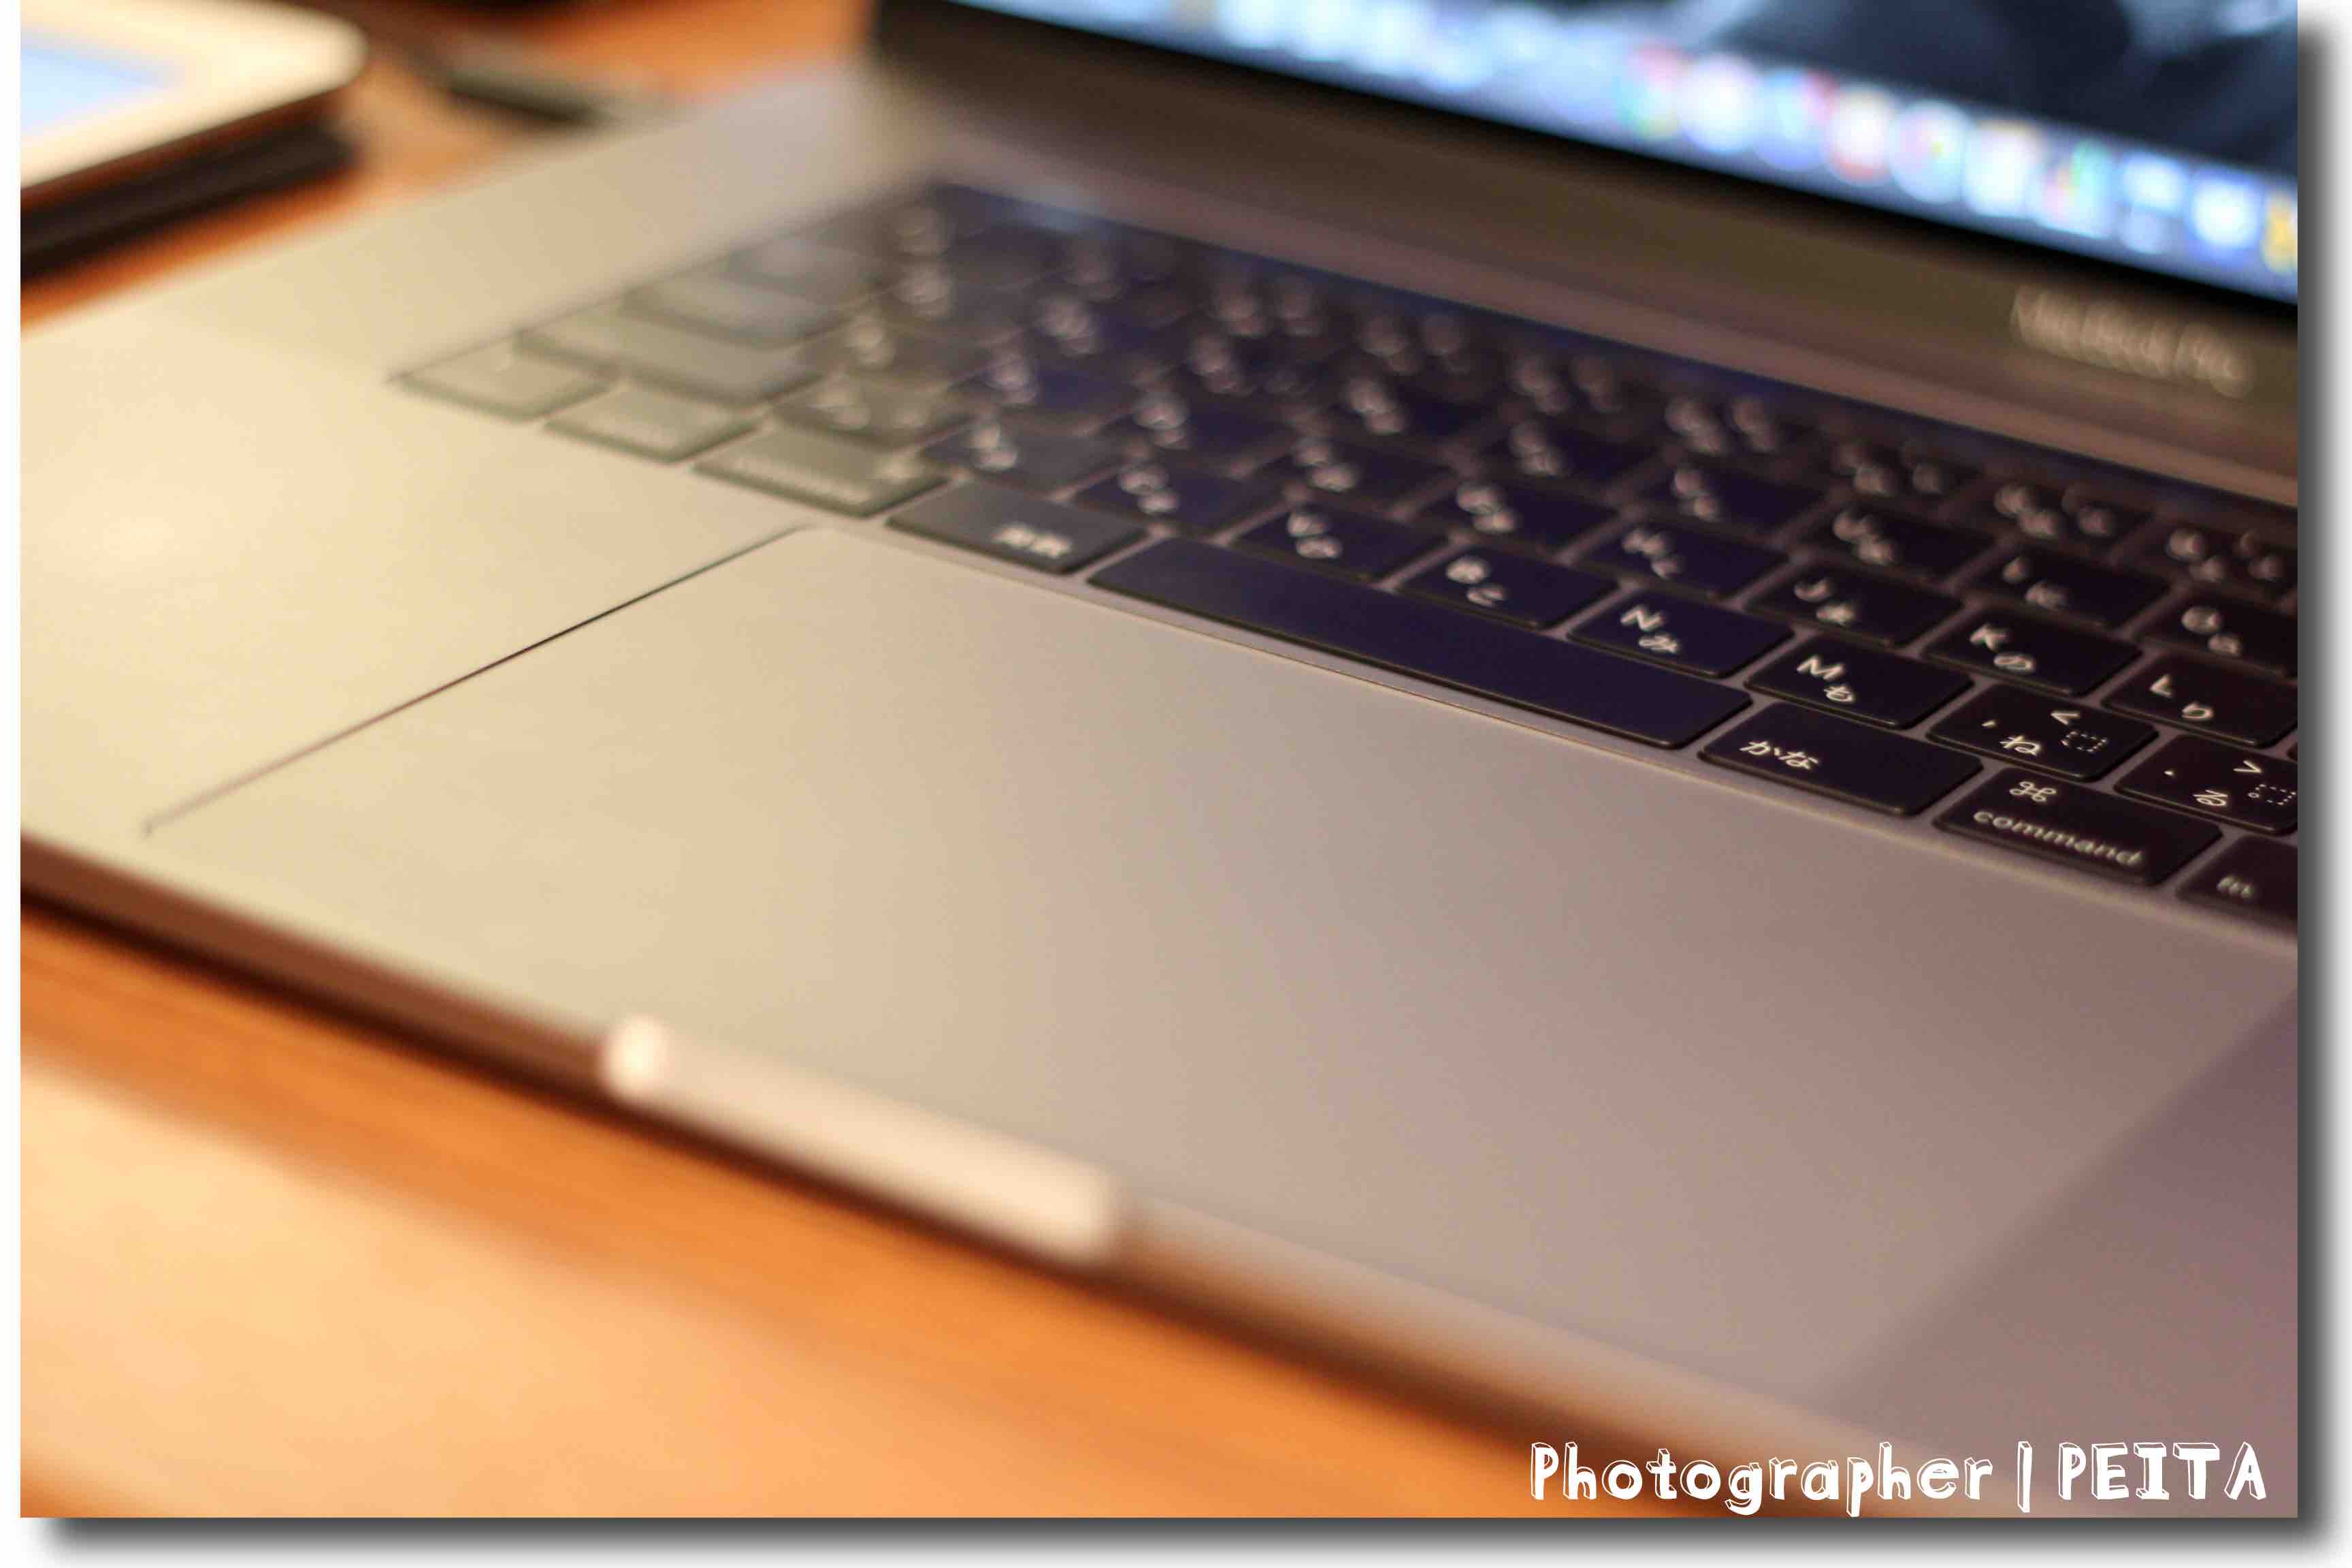 MacBook Pro 15インチ どこが変わった?進化した?5つのポイント! 音質や 